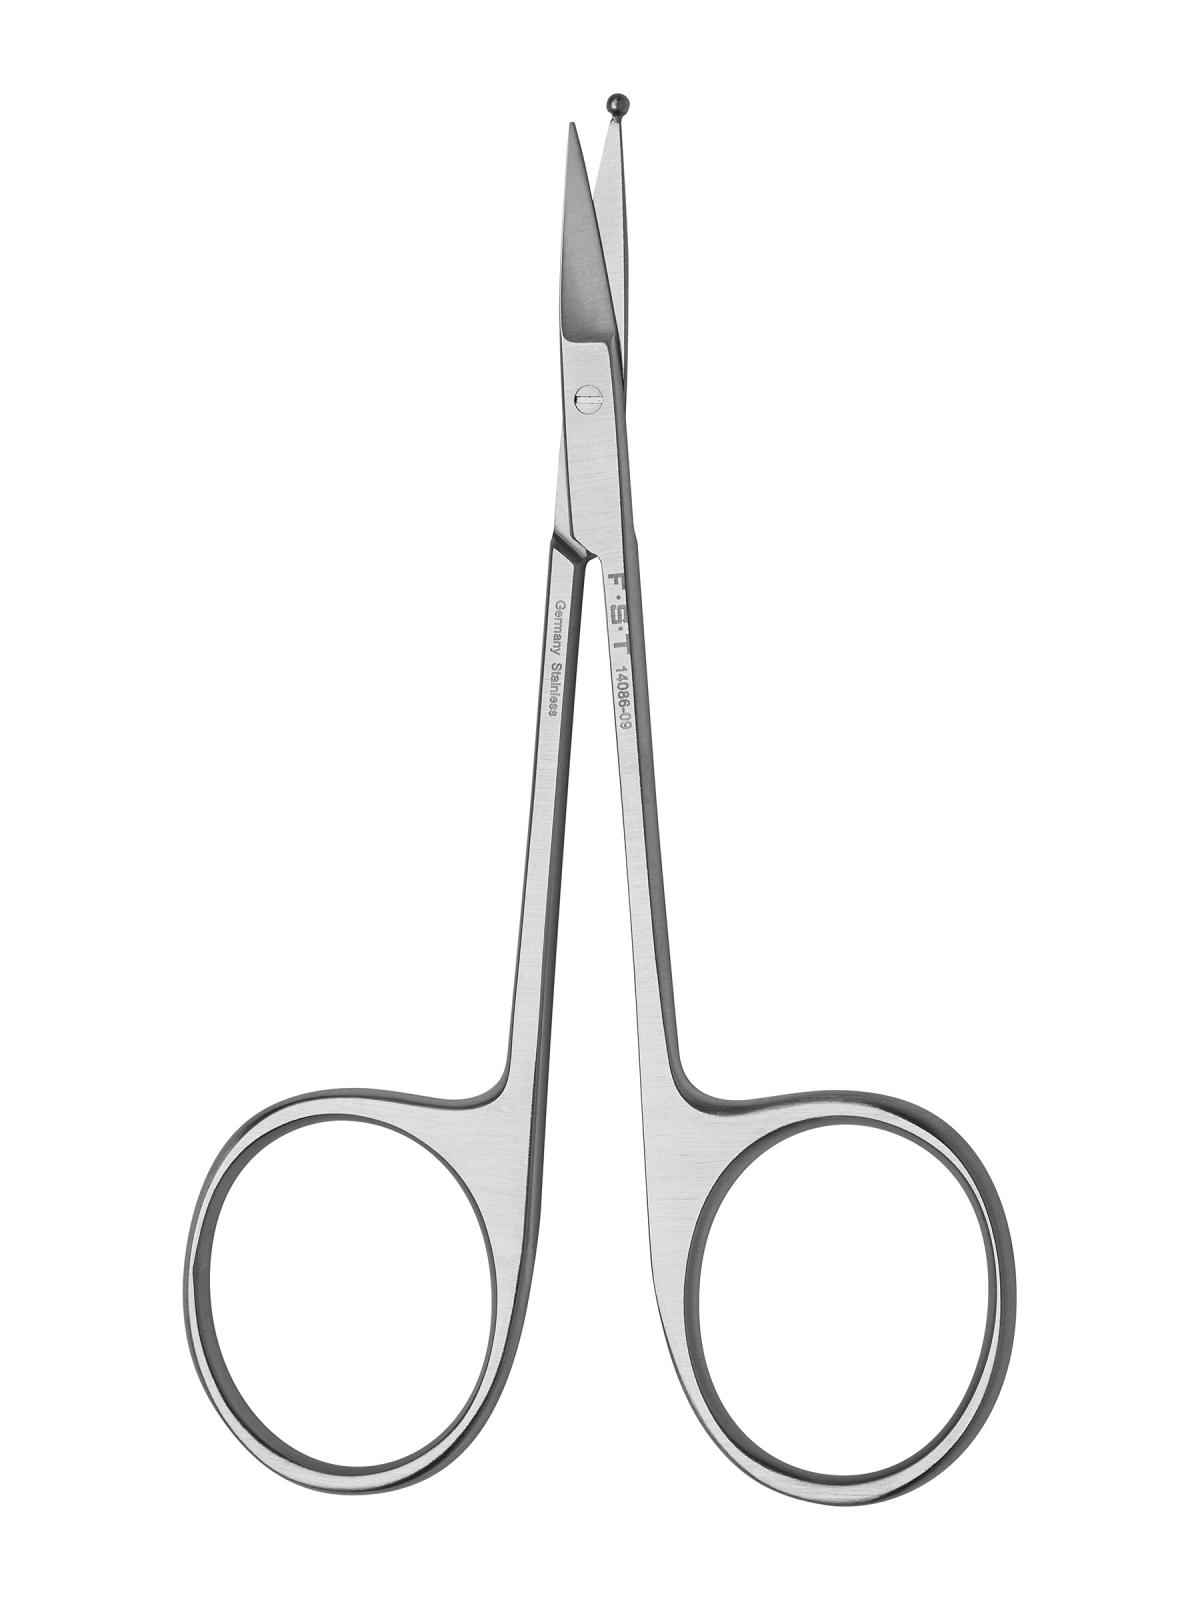 Stainless steel scissors / Sharp-Sharp tips / straight / 155 mm